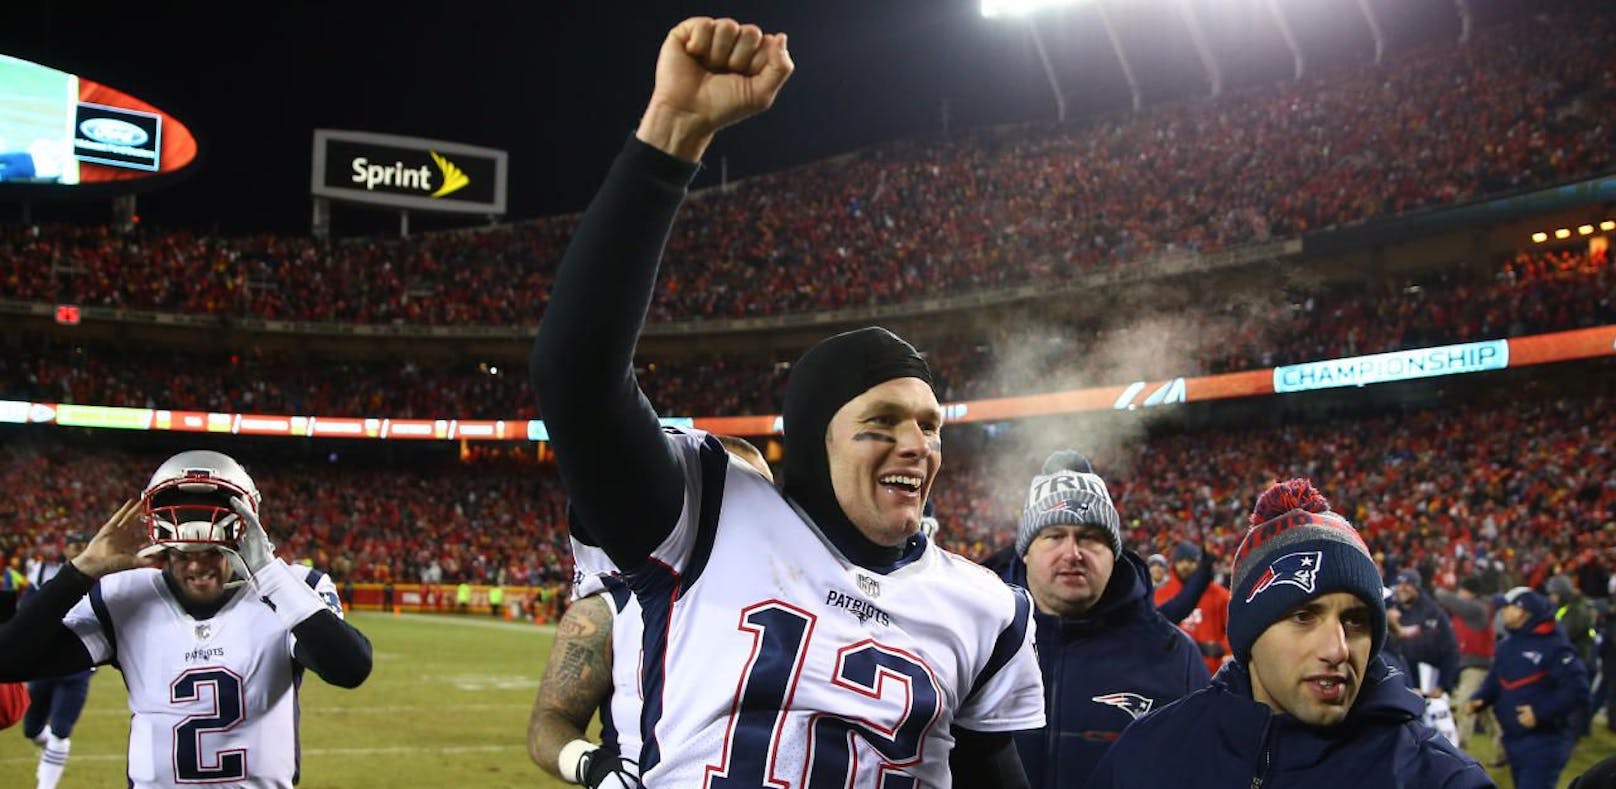 Wird er das Spiel machen? Patriots-Quarterback Tom Brady greift nach seinem sechsten Super Bowl-Sieg!